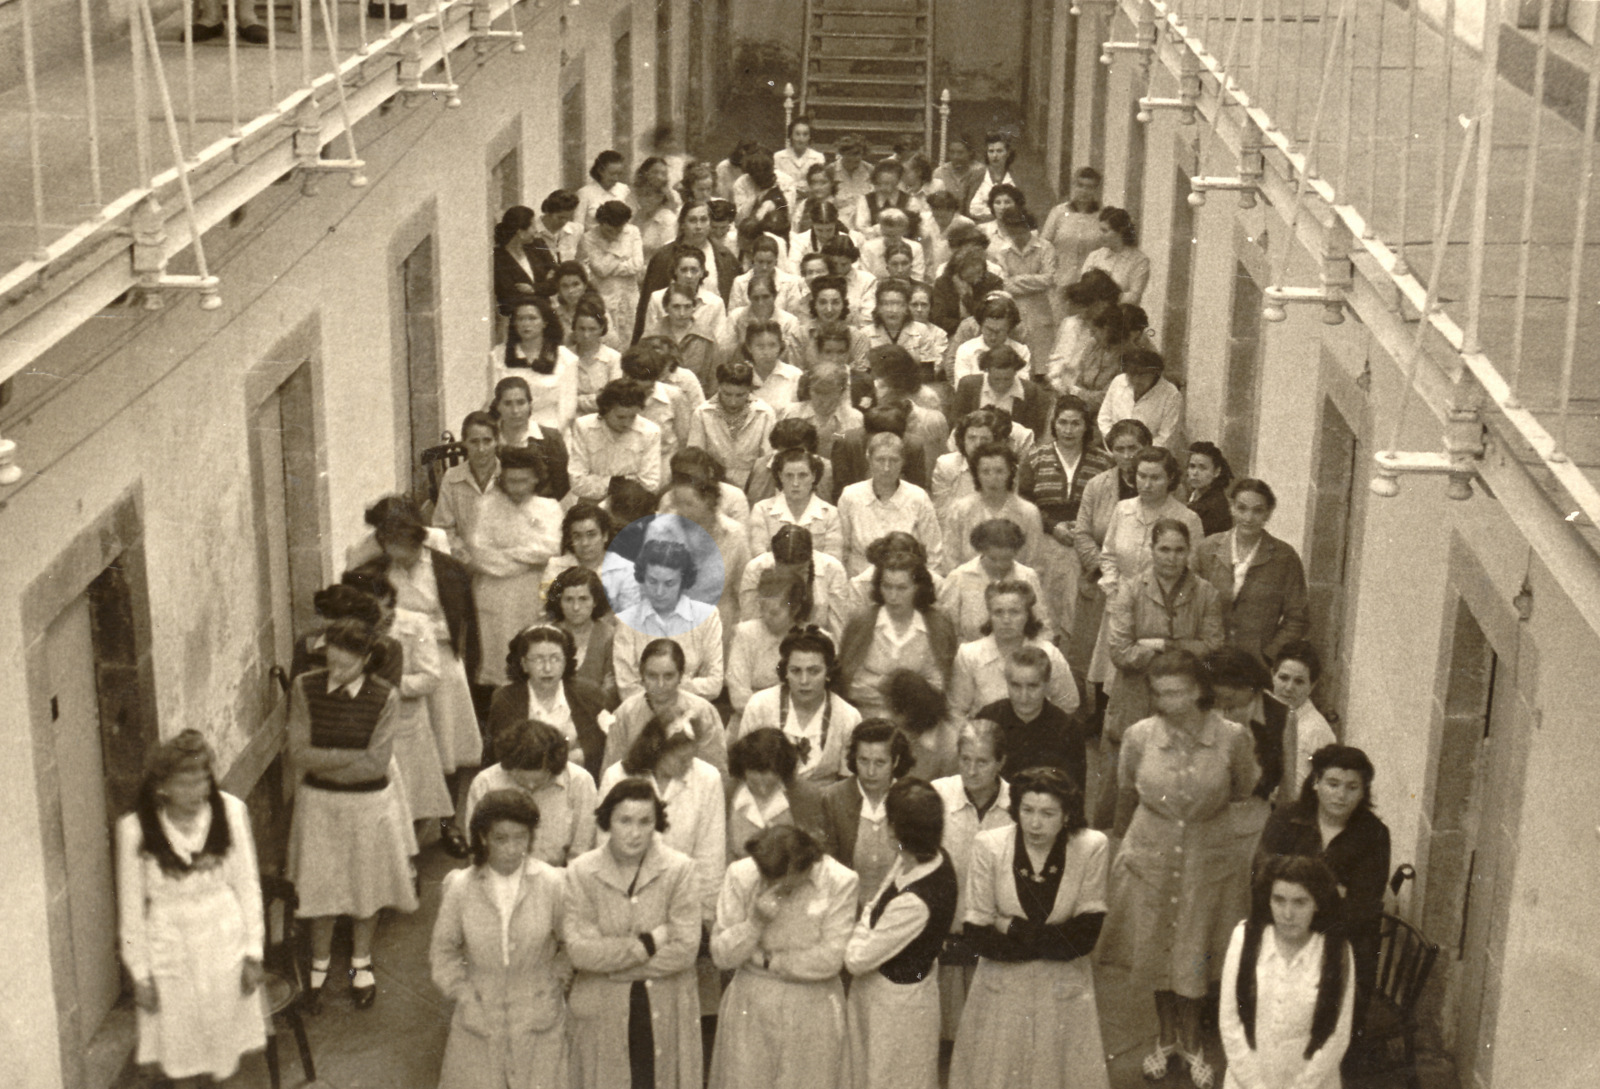 Misa de campanya a la presó de Segovia, 1954. Resaltada, Maria Salvo Iborra. Arxiu personal de Maria Salvo Iborra